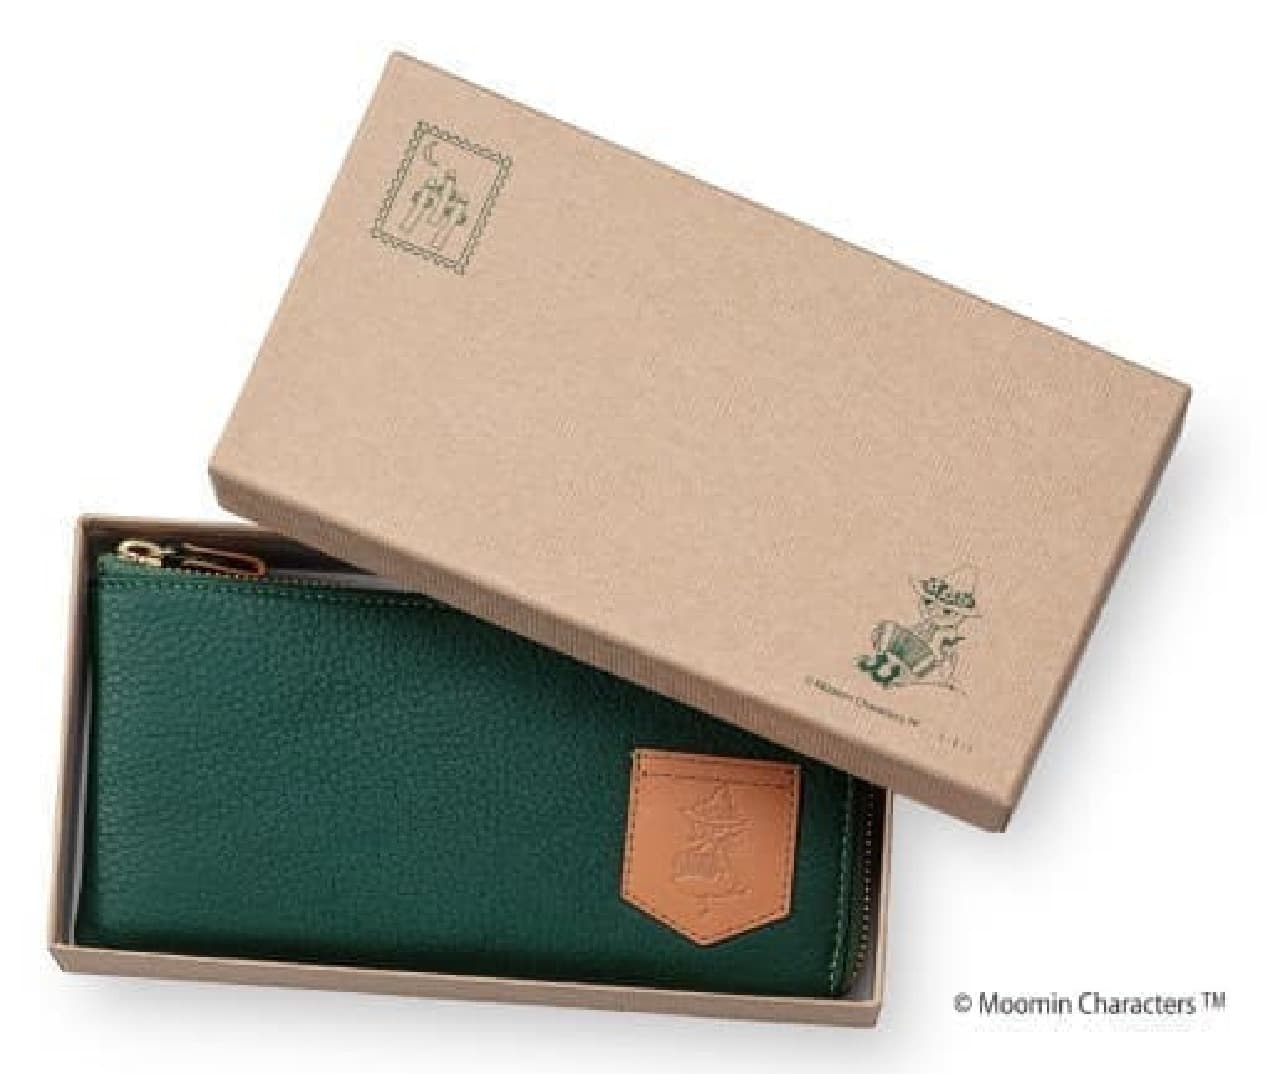 ムーミン75周年記念「スナフキン 森のレザーウォレット」発売 -- ムーミン谷の森をイメージした緑色の長財布